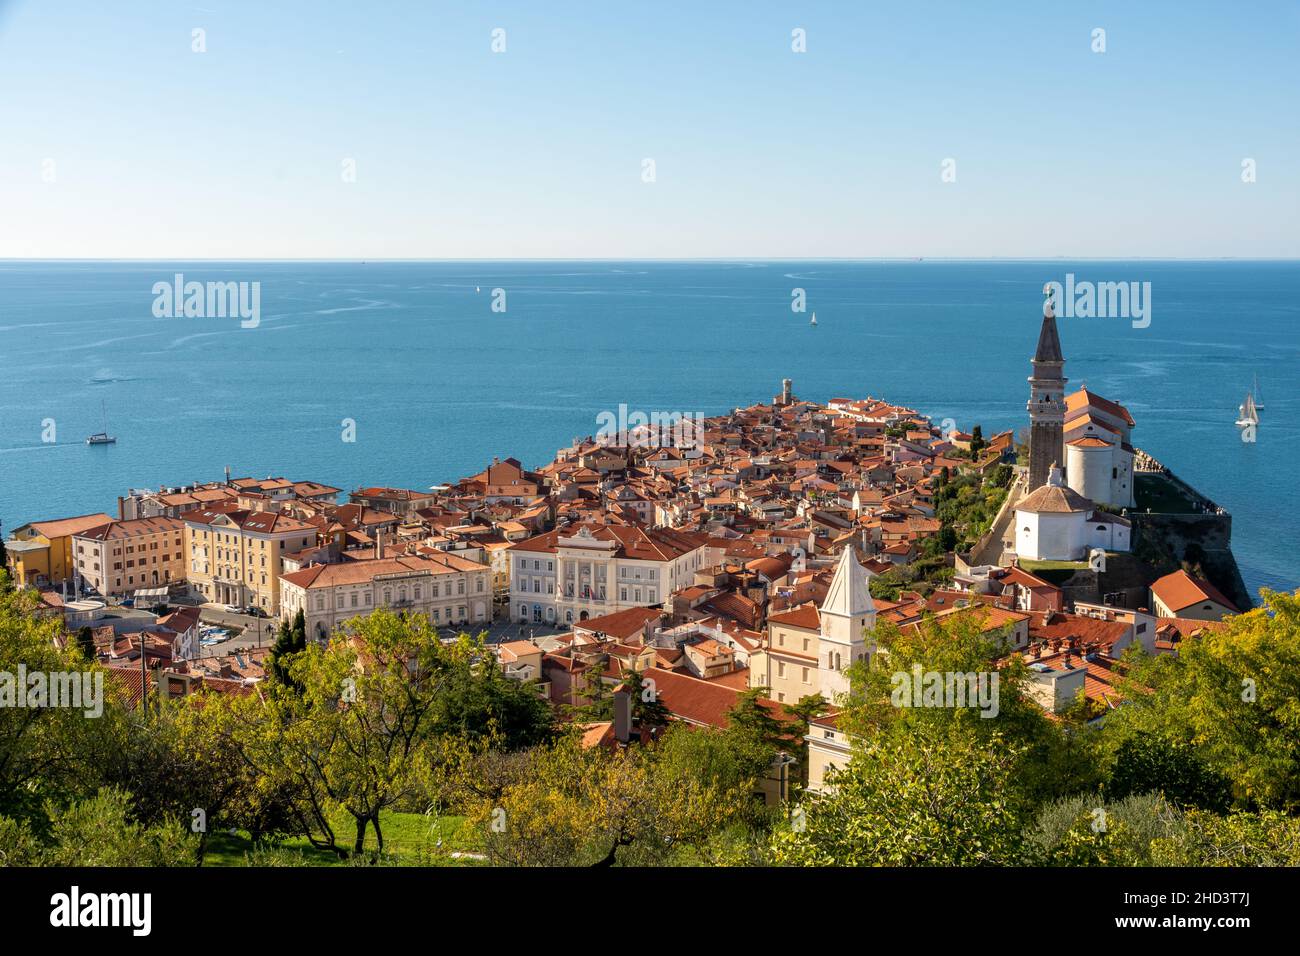 La ciudad costera de Piran en Eslovenia y el mar mediterráneo en el fondo Foto de stock